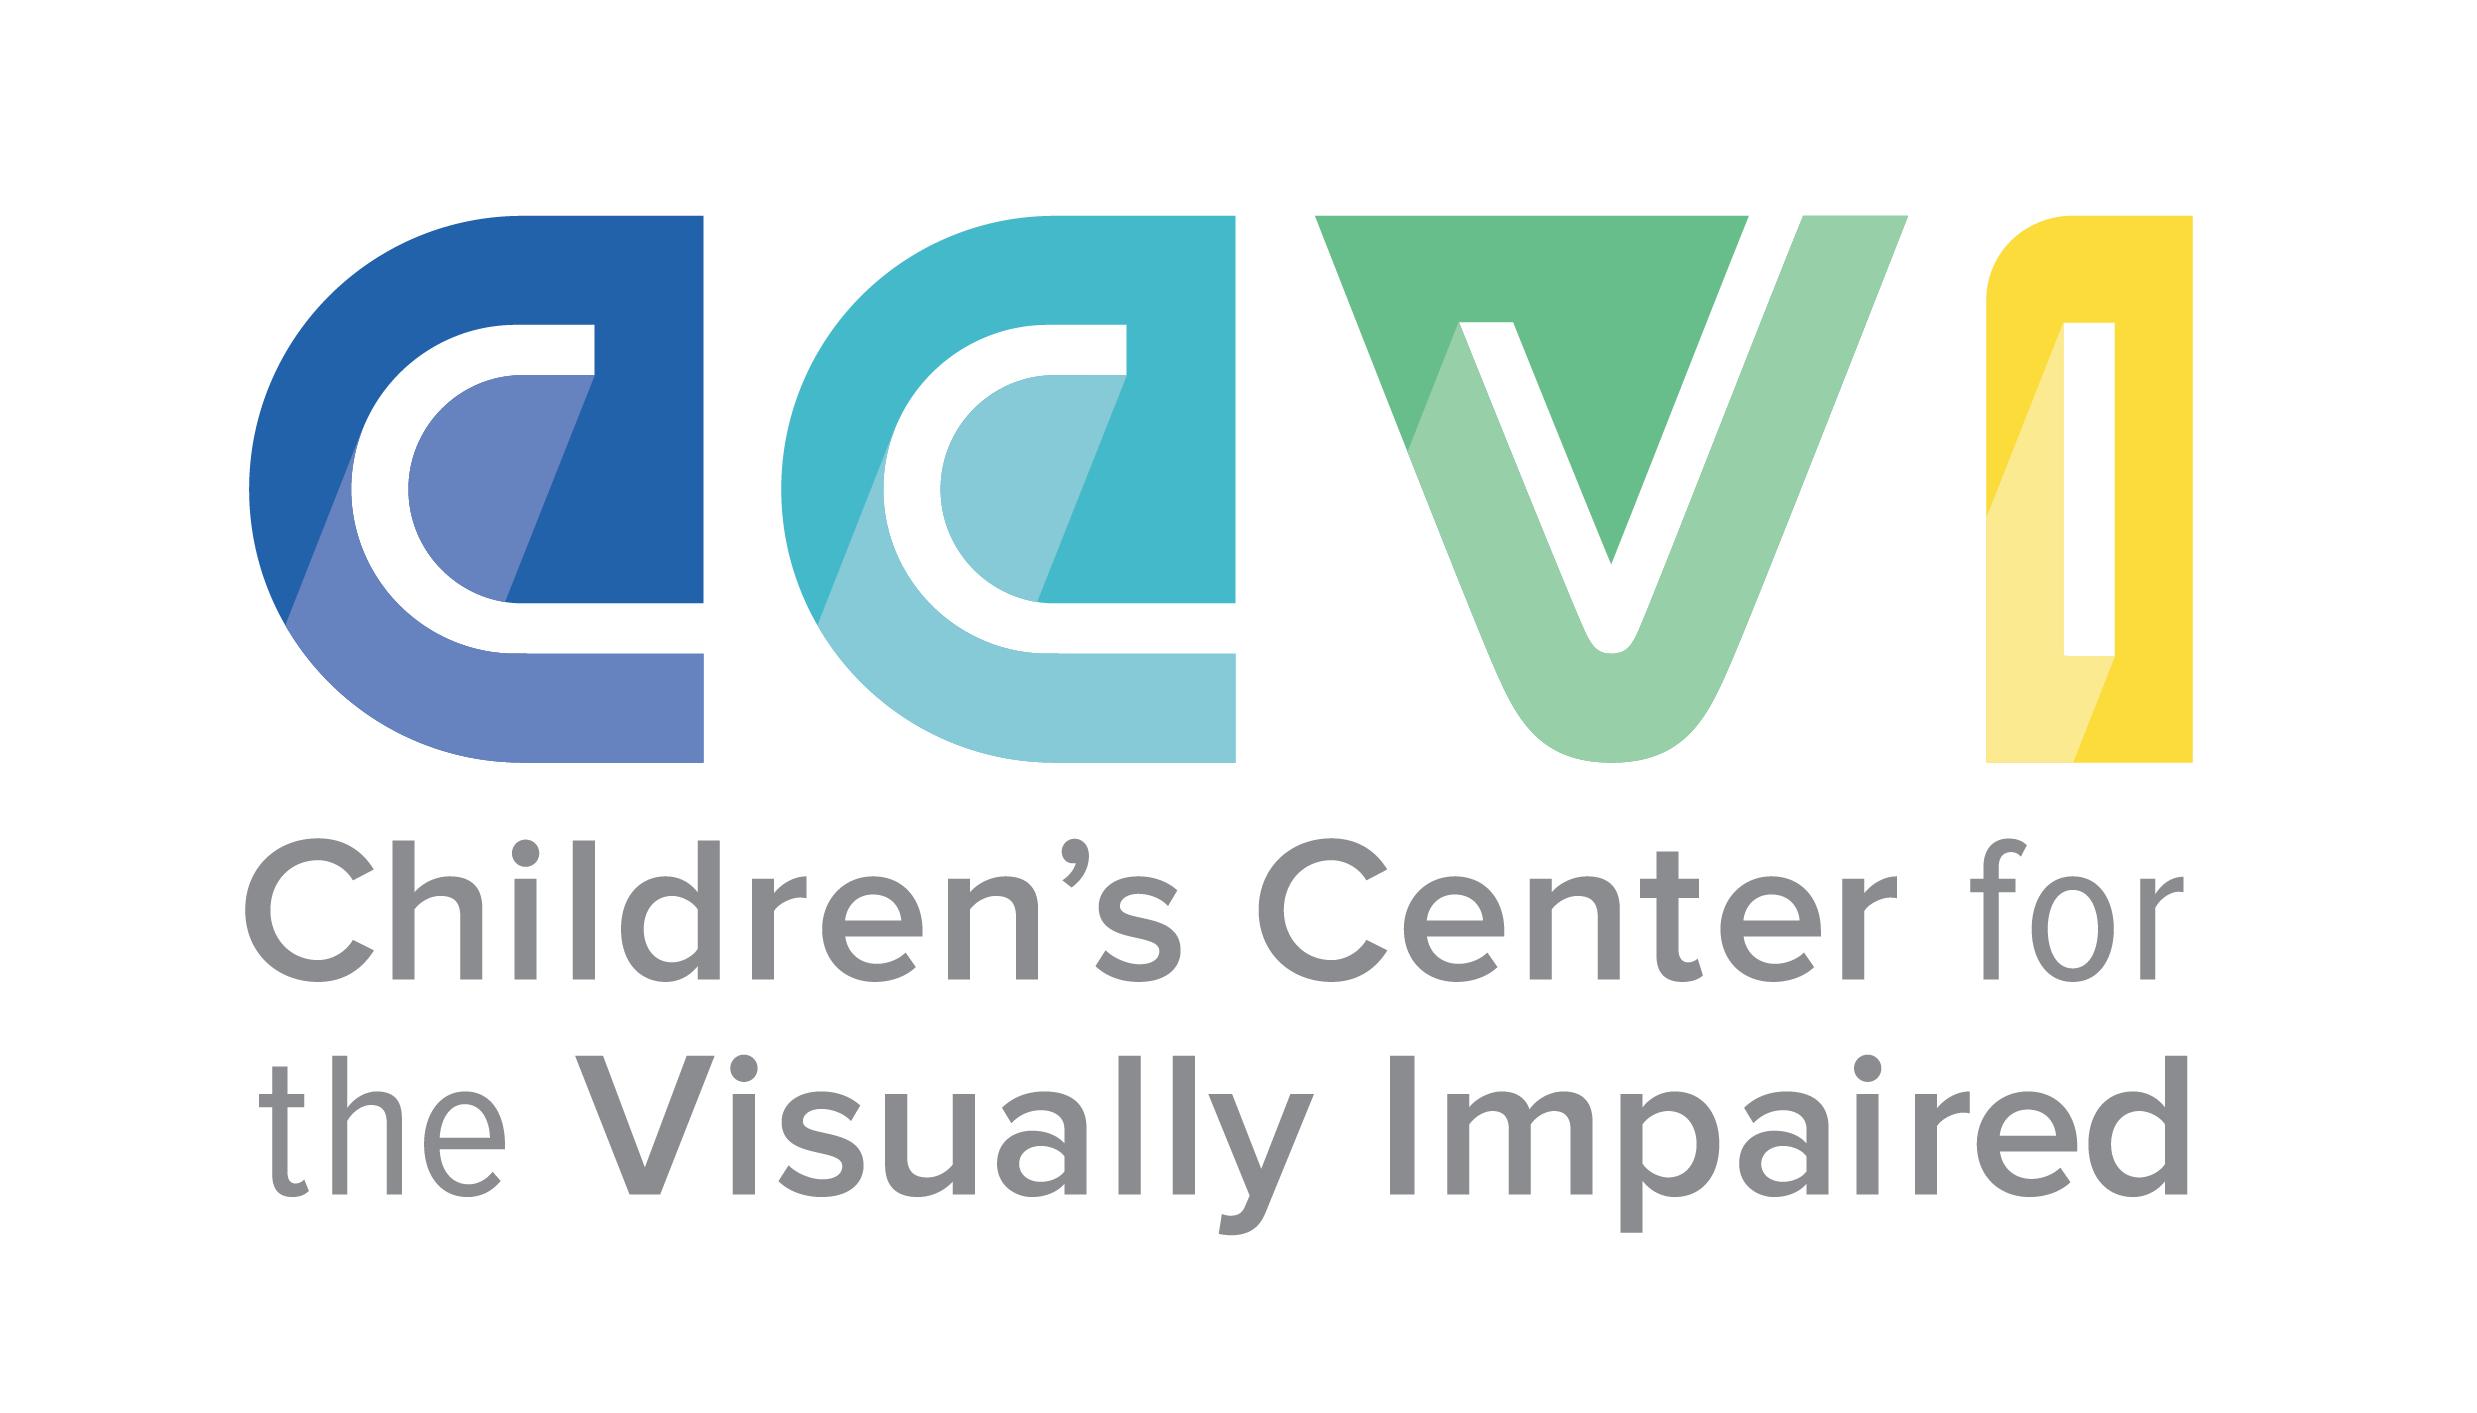 CCVI logo and link to website